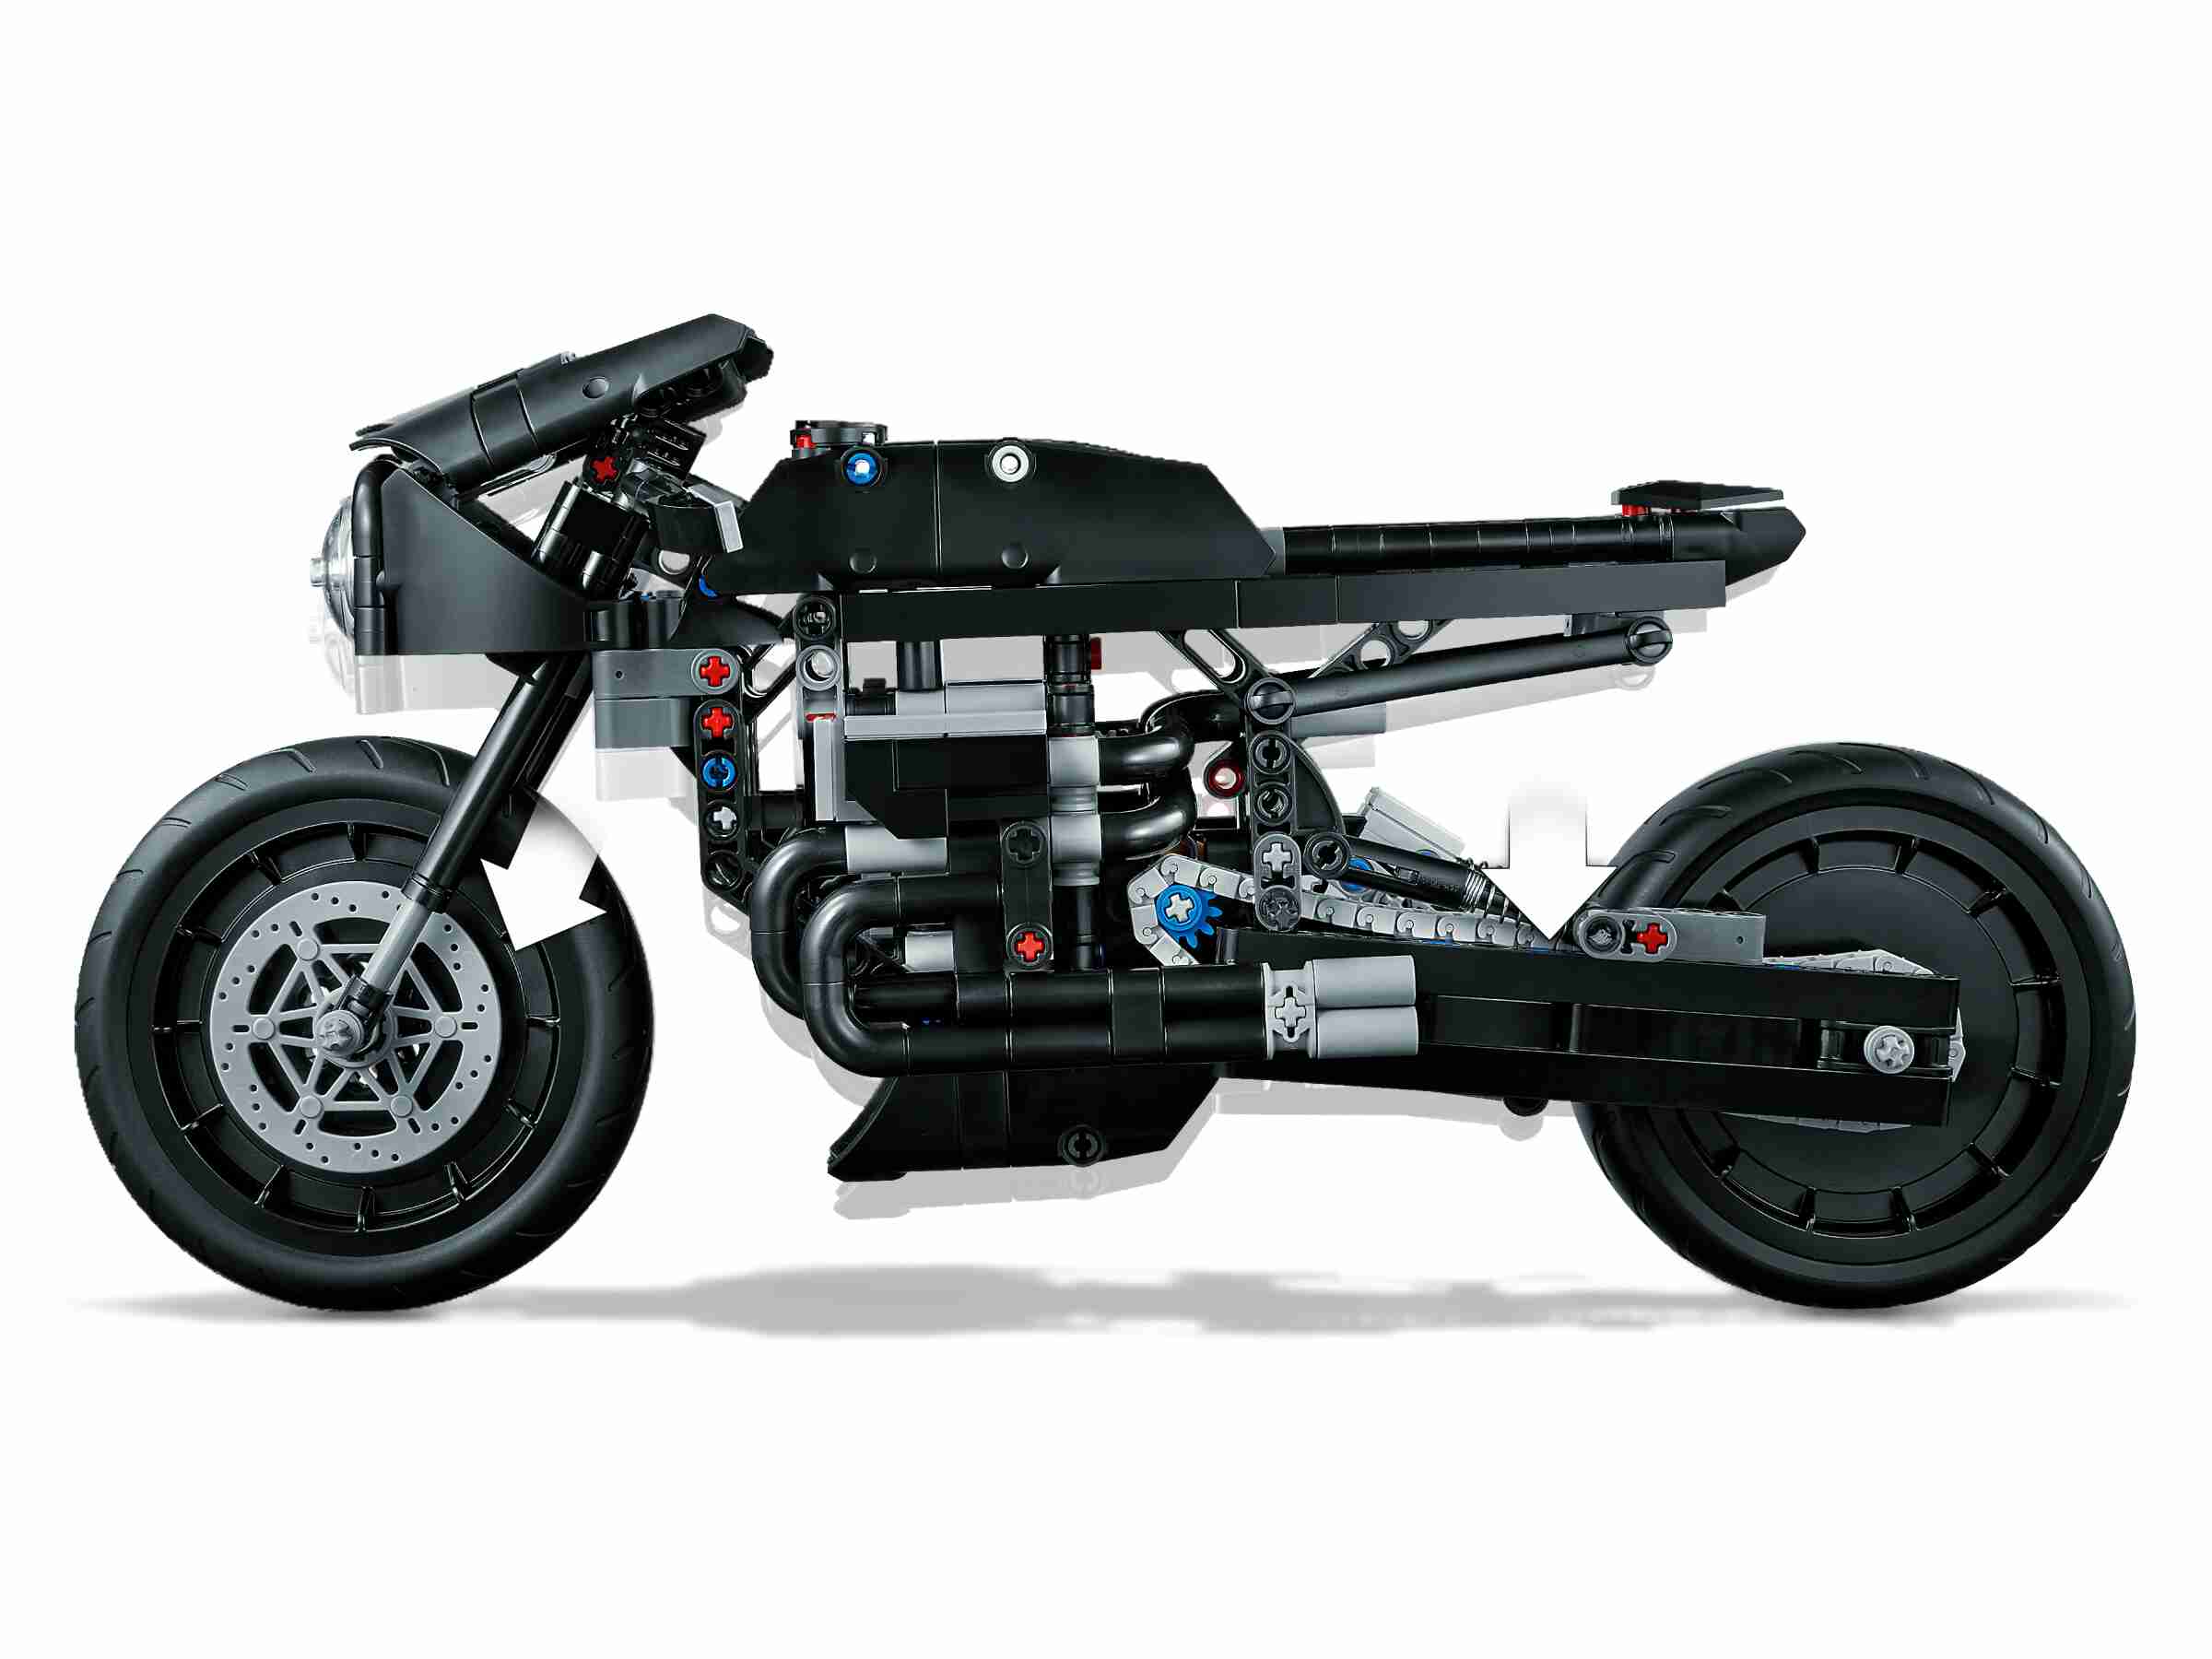 LEGO 42155 Technic THE BATMAN – BATCYCLE, Modell zum Spielen und Ausstellen